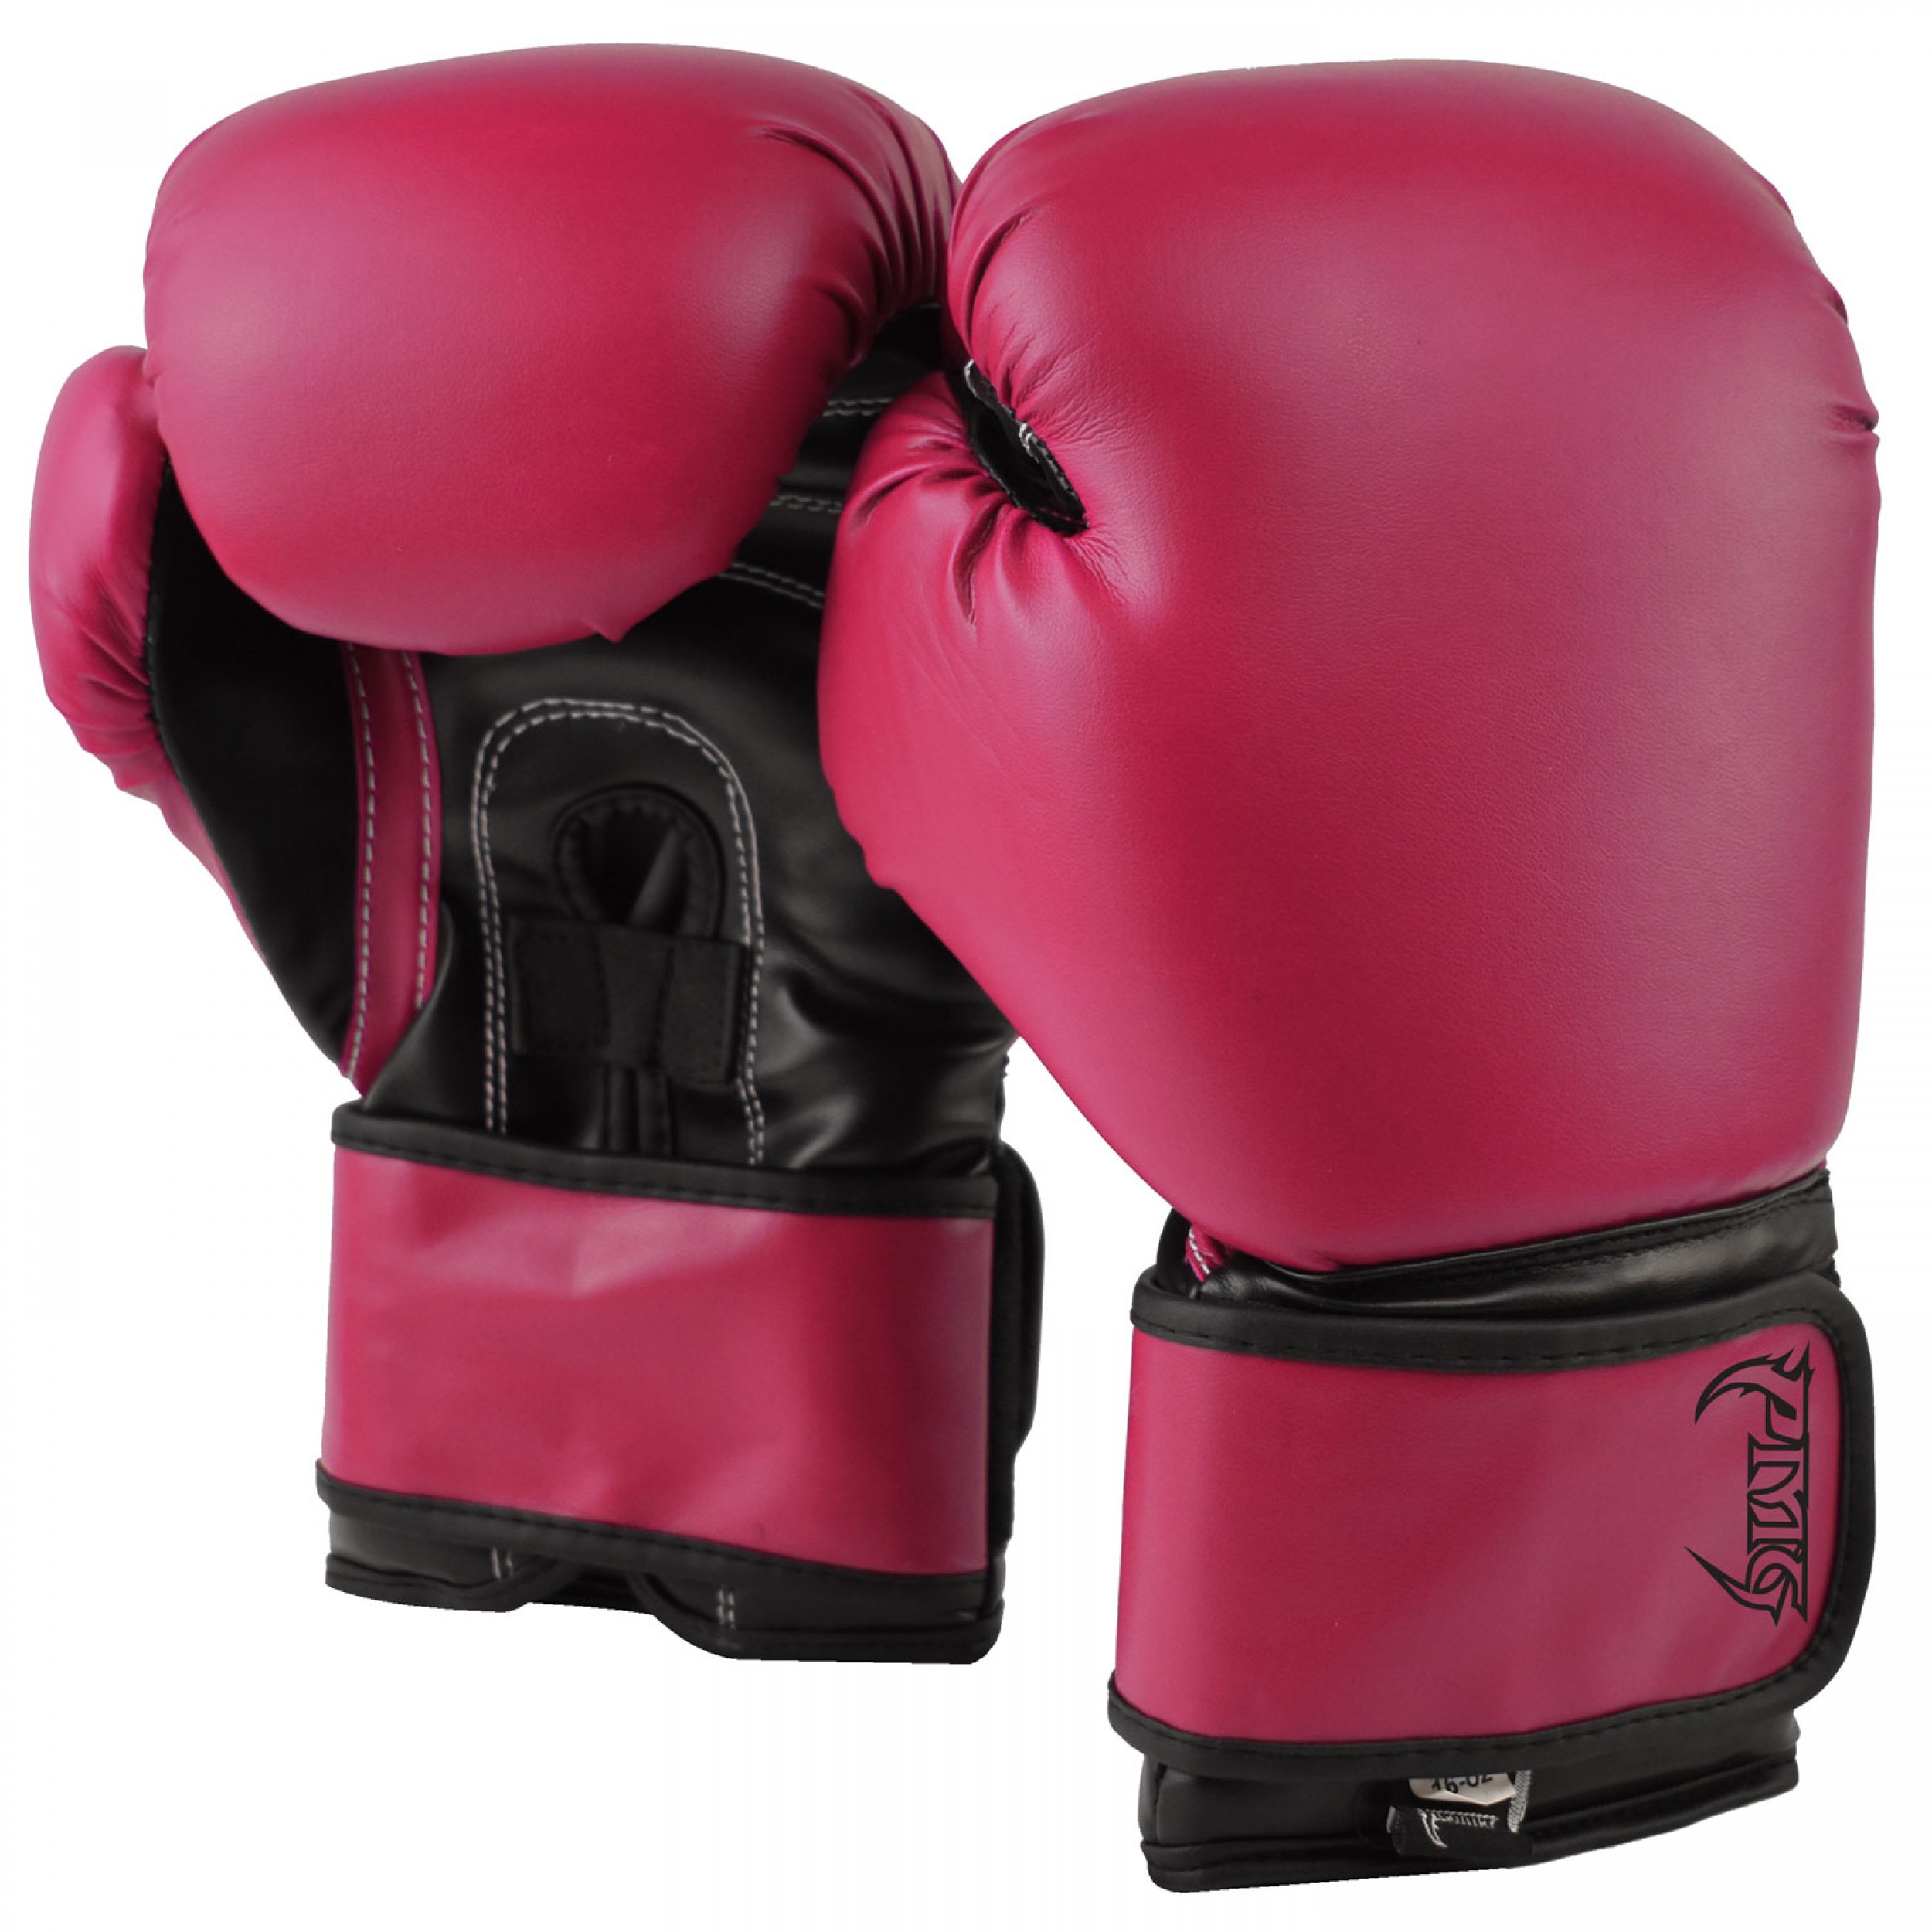 Pinnacle Boxing Gloves - Black. Pink